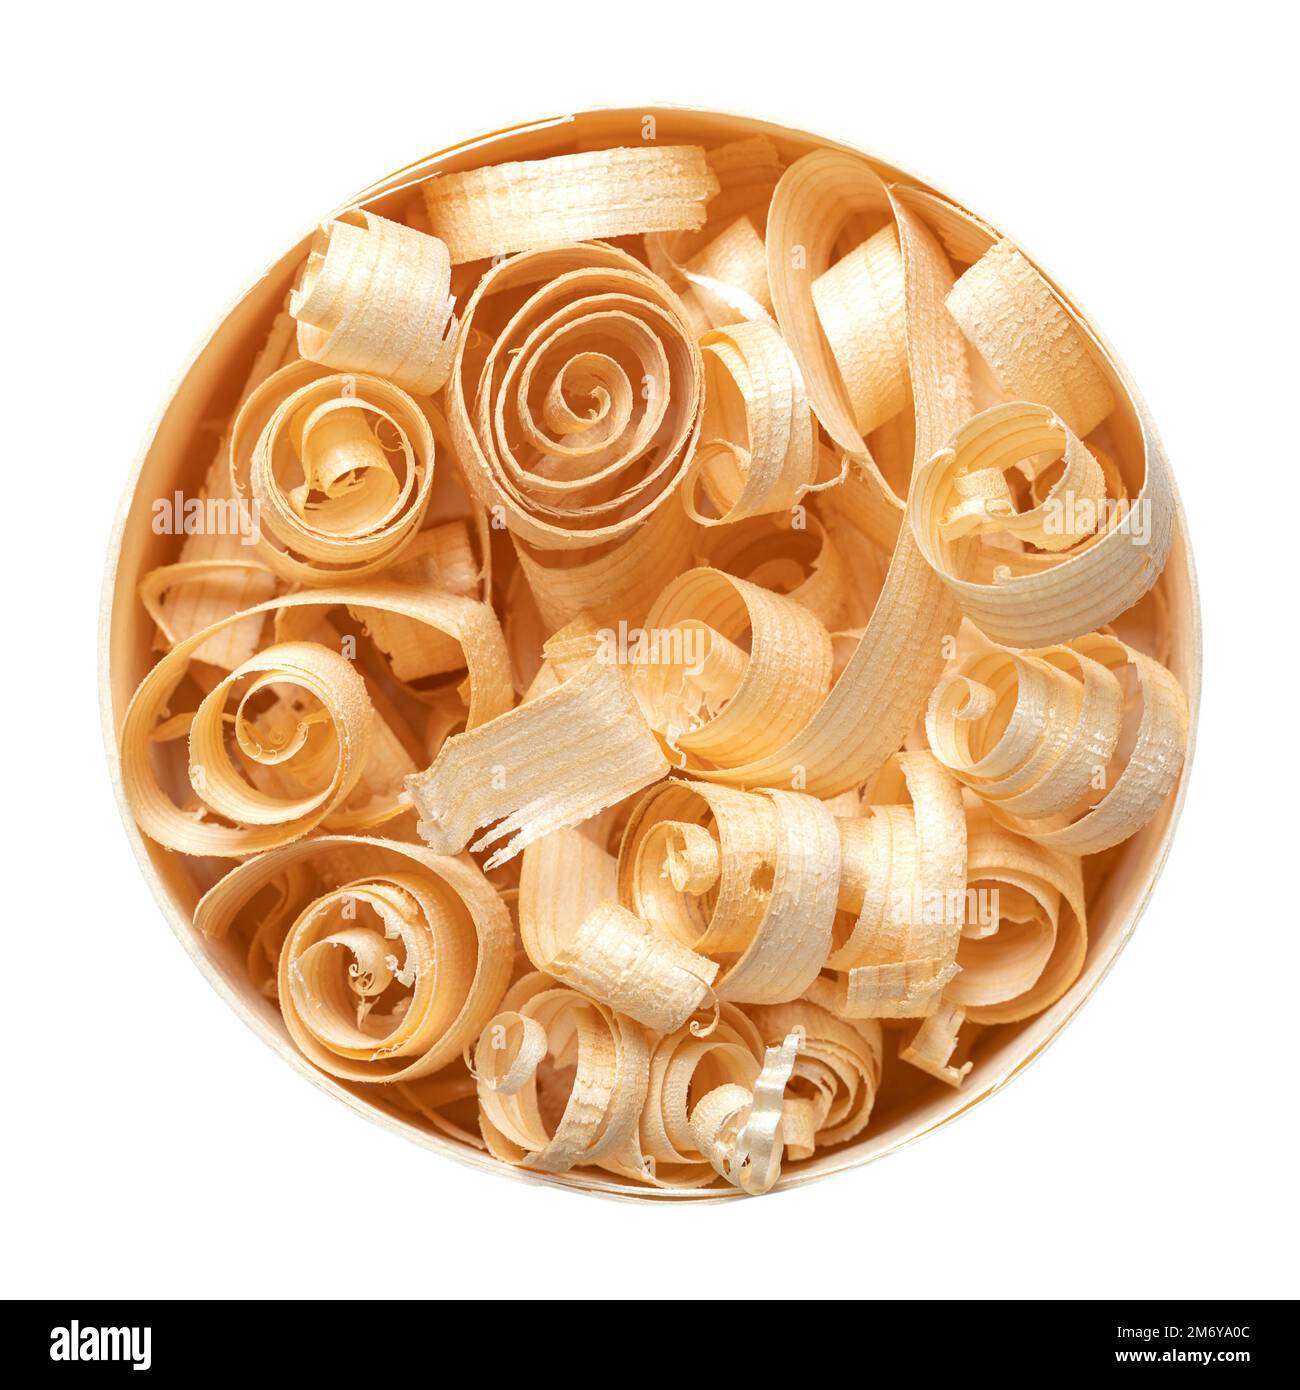 Trucioli di legno a forma di spirale in una scatola rotonda di truciolato. Spirali di legno, realizzate con un piano manuale in legno di abete rosso secco, in una scatola circolare per trucioli di legno. Foto Stock